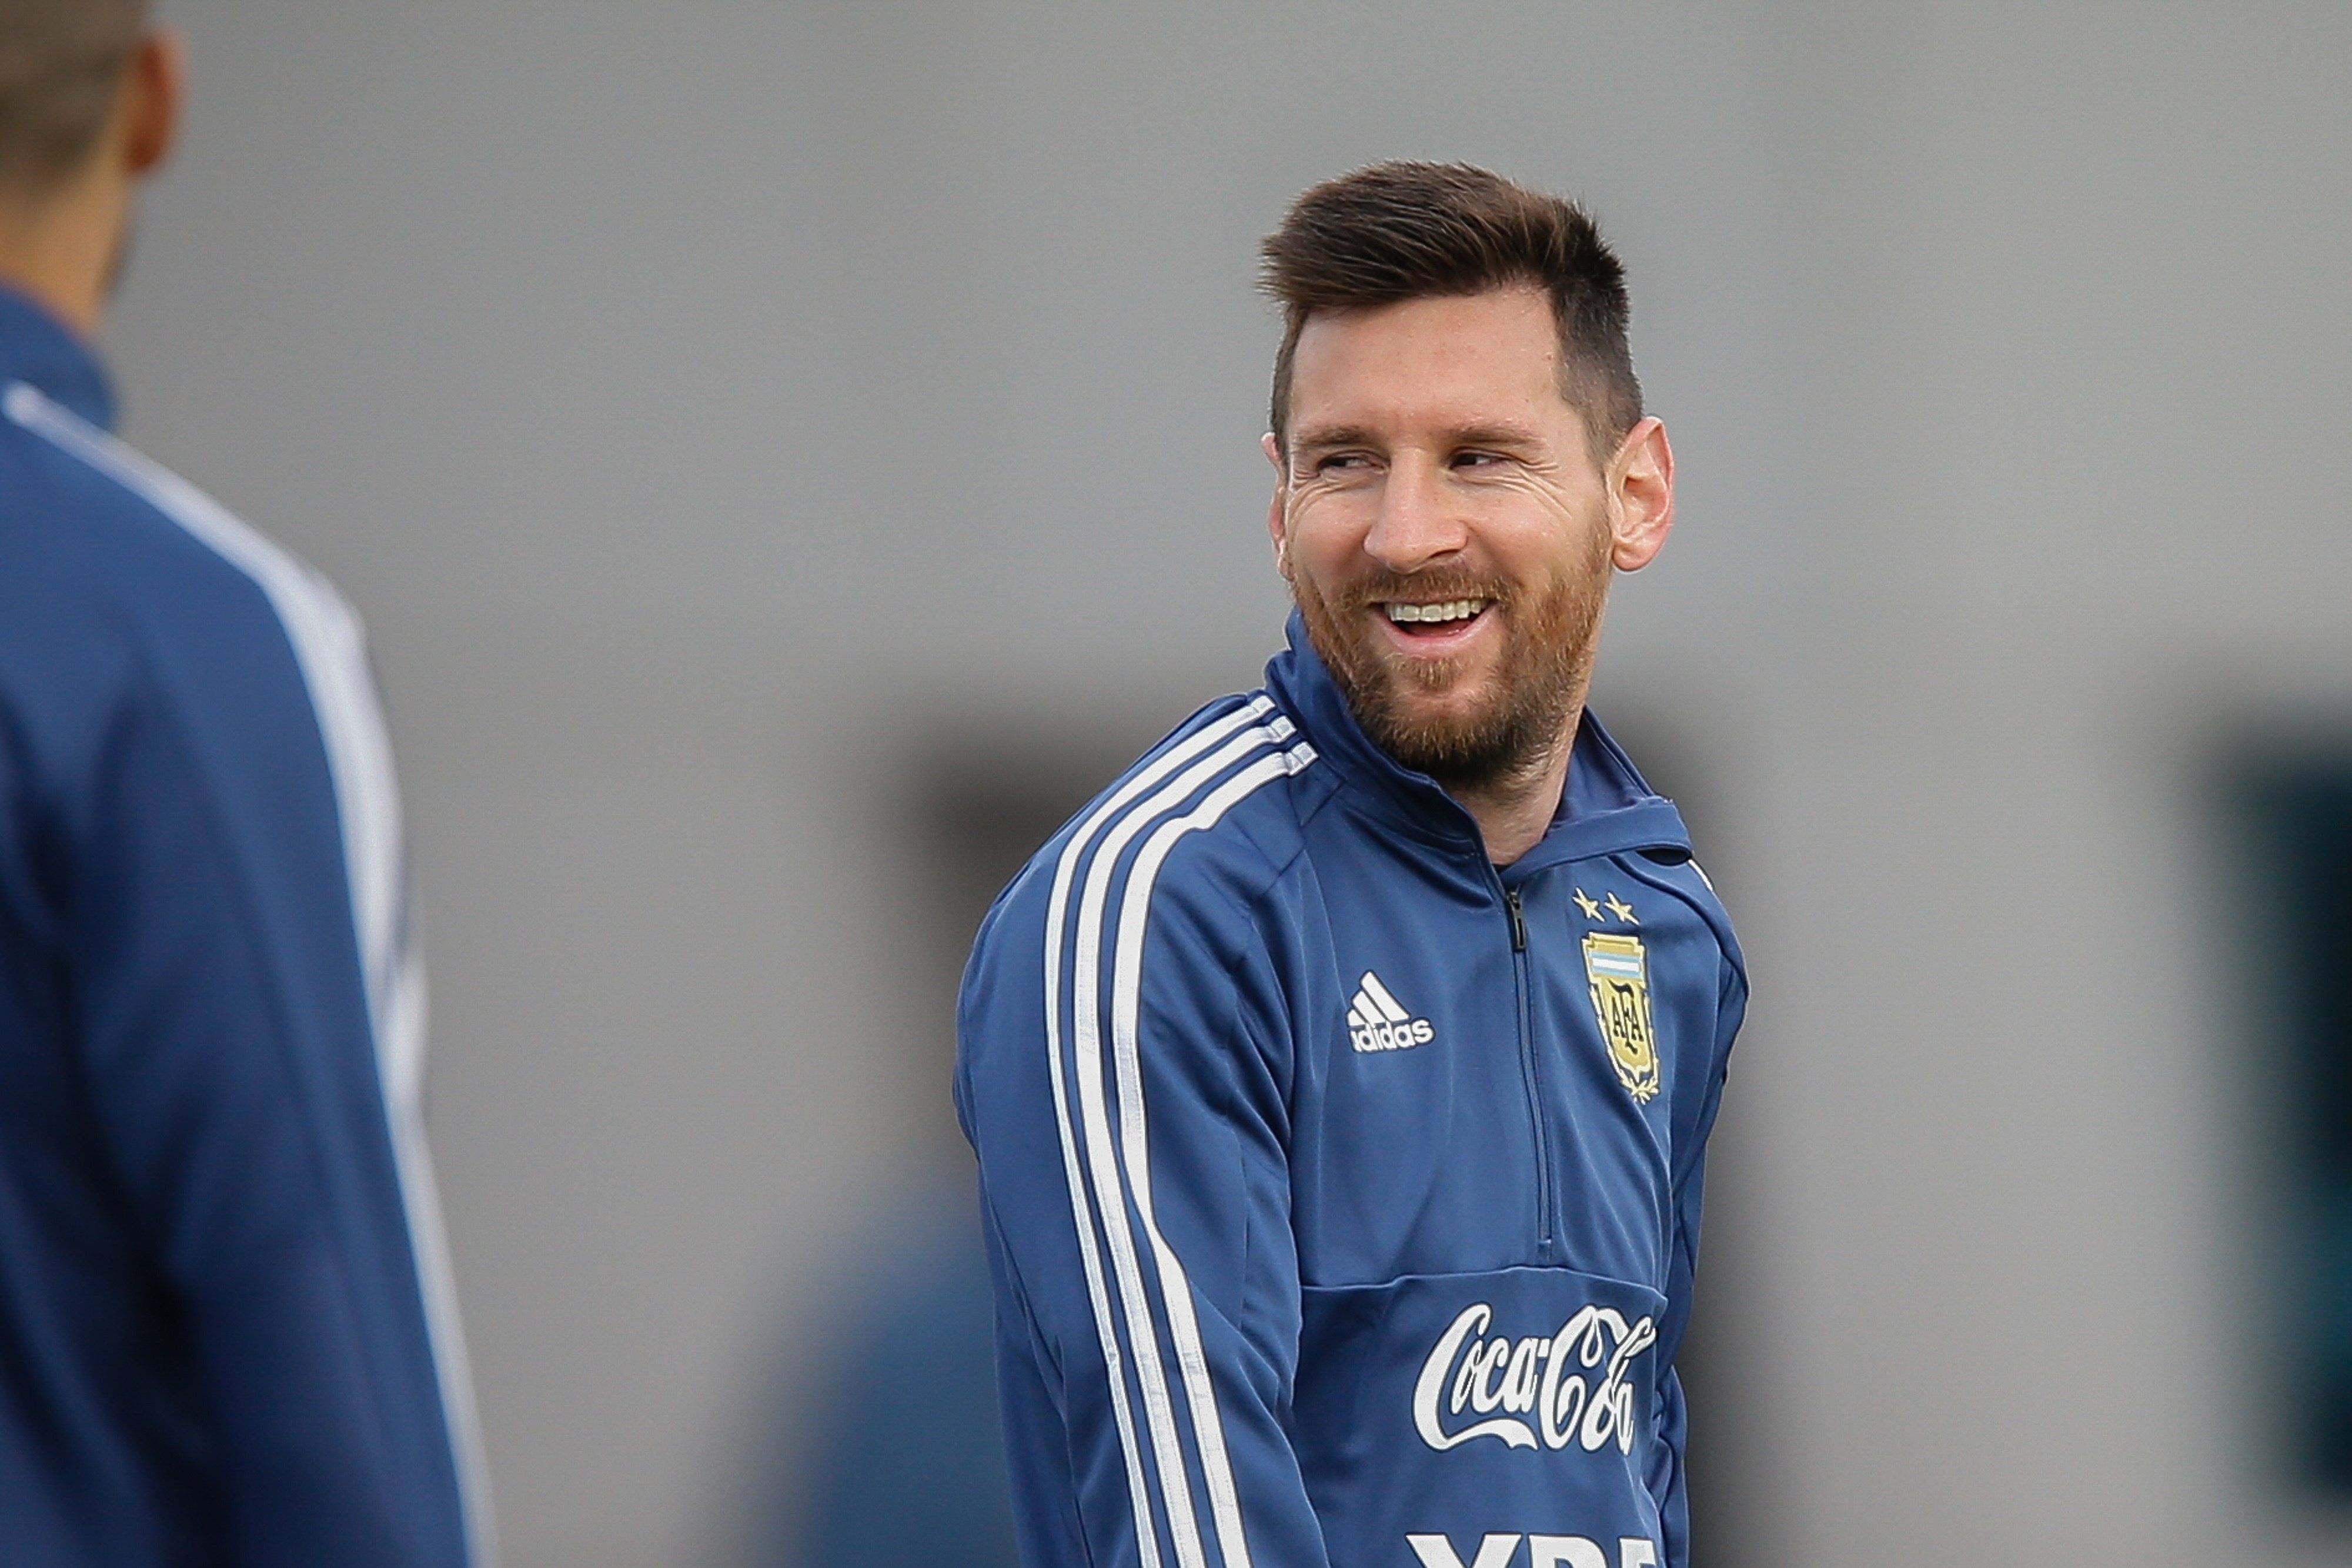 El delantero argentino Lionel Messi sigue generando muchas ganancias económicas. (Foto Prensa Libre: EFE)